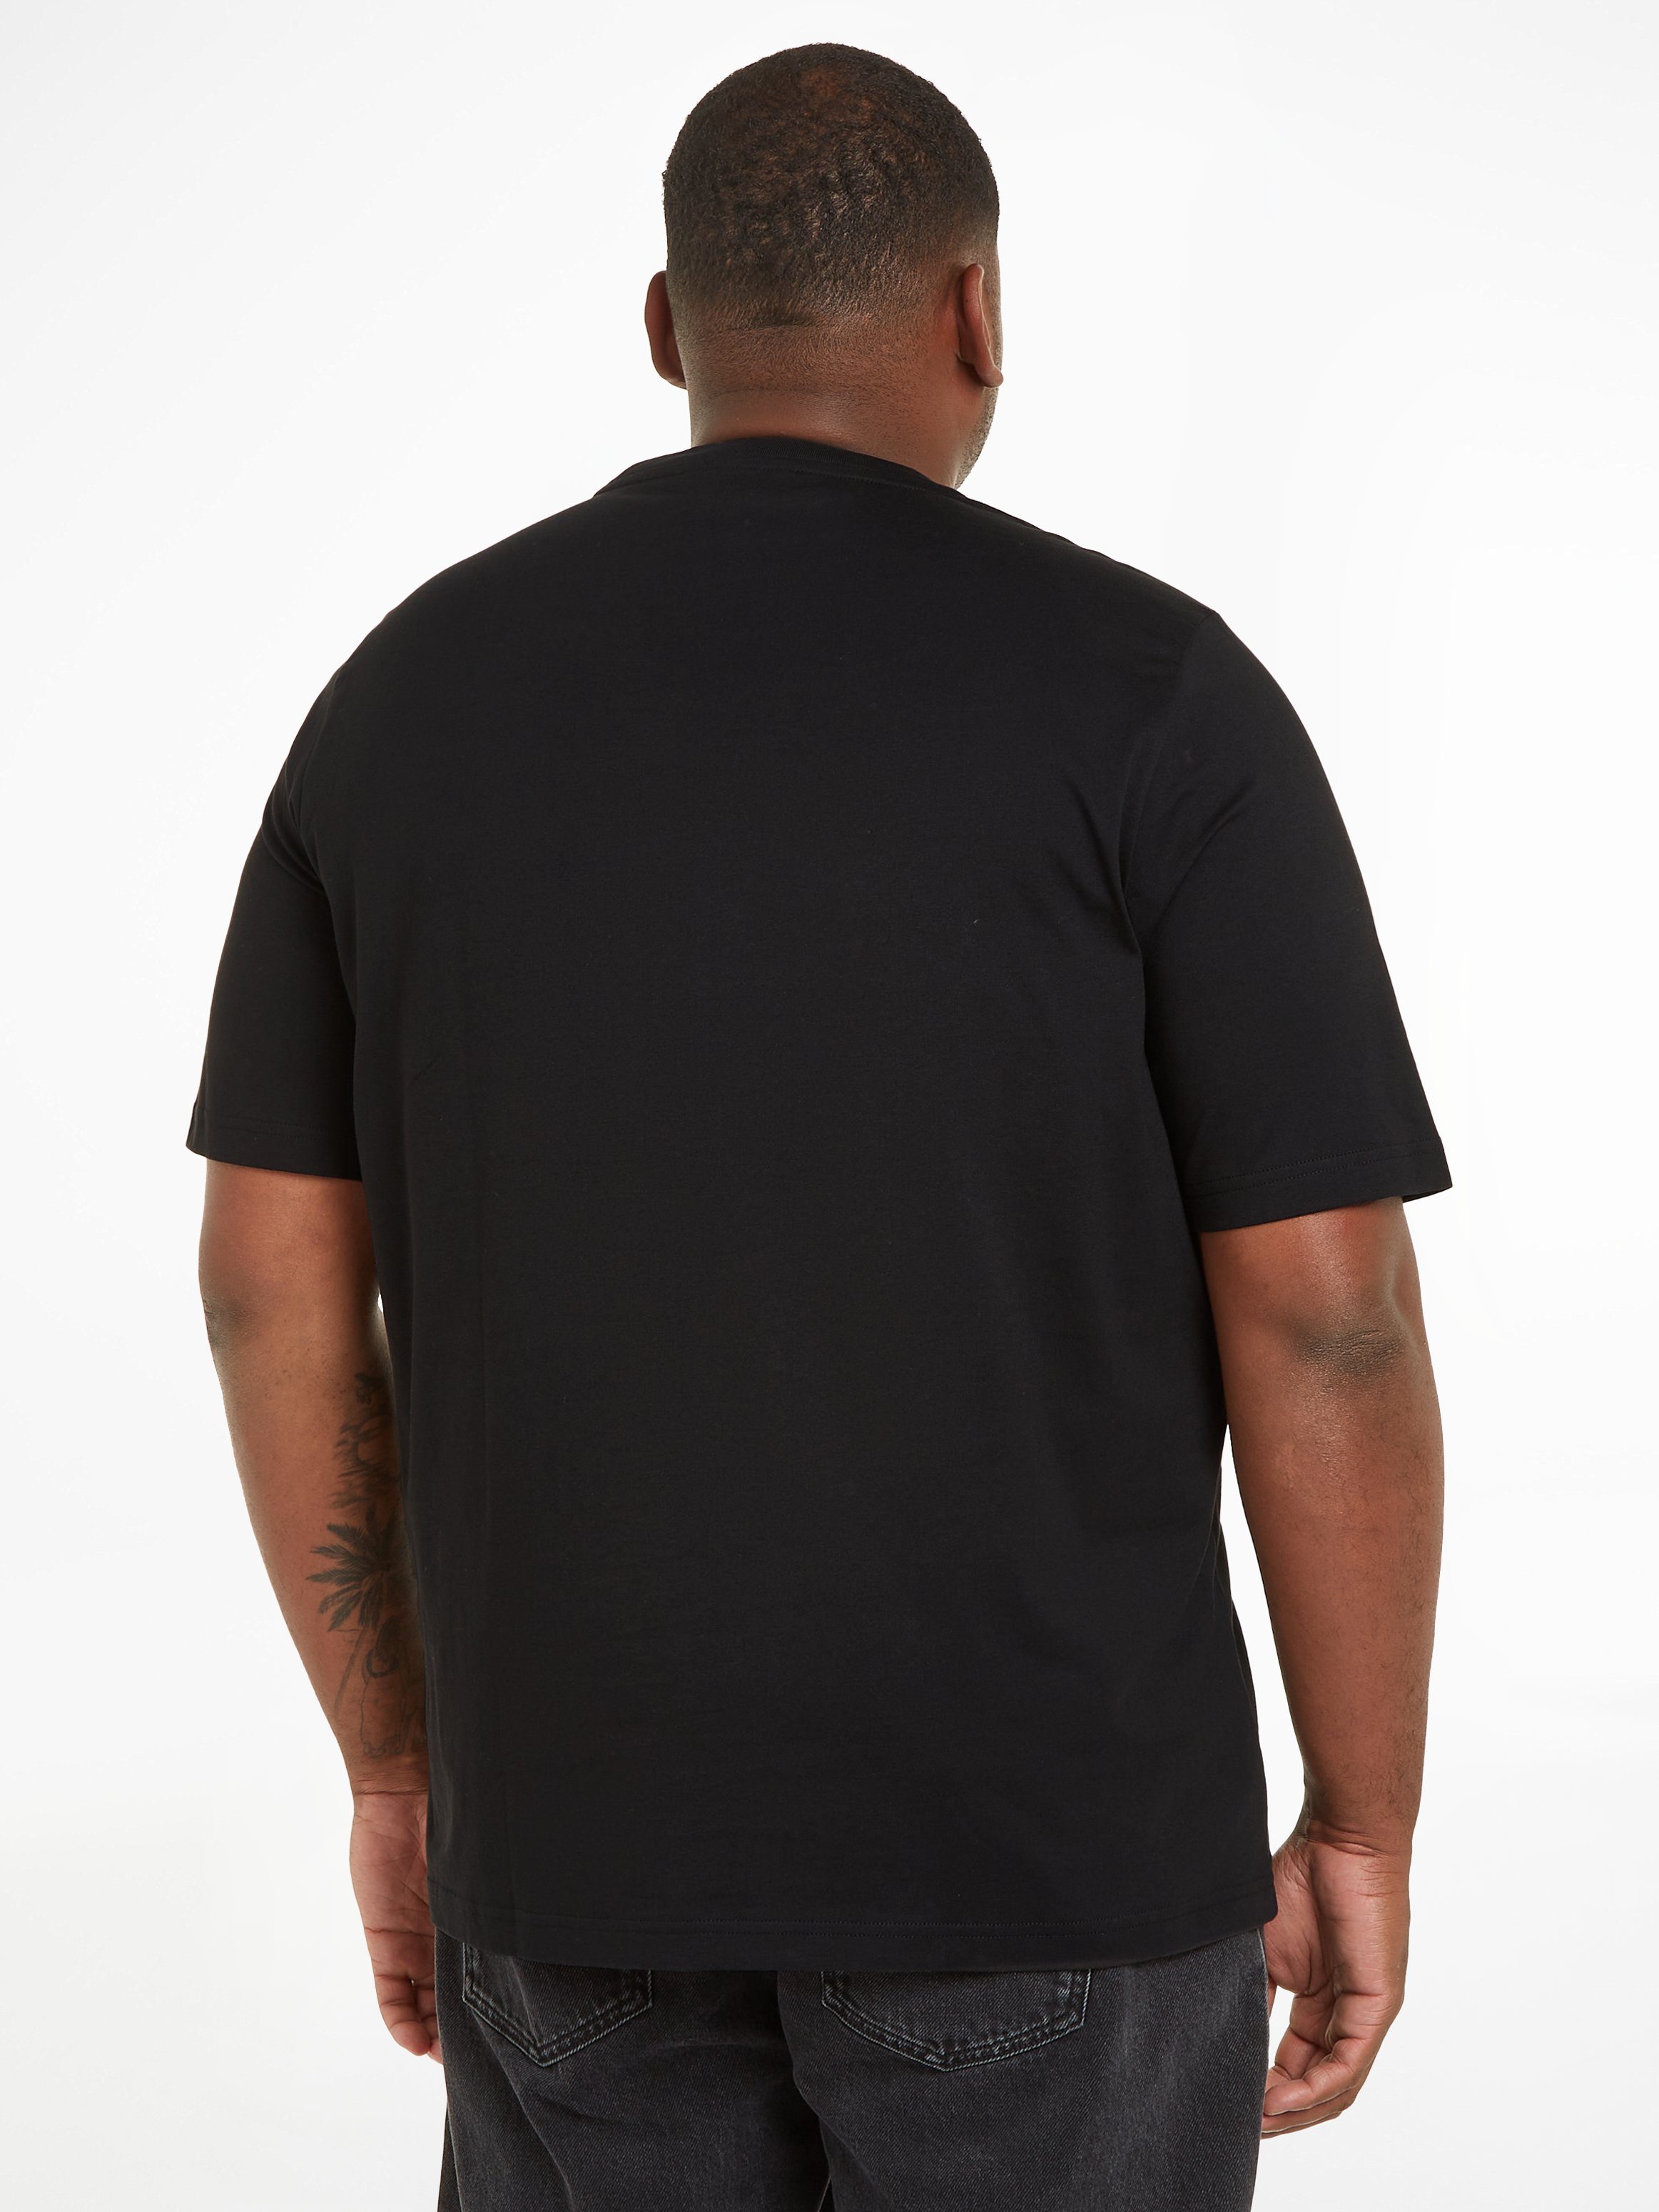 Ck Black T-SHIRT BT-HERO Klein COMFORT LOGO Big&Tall Calvin T-Shirt